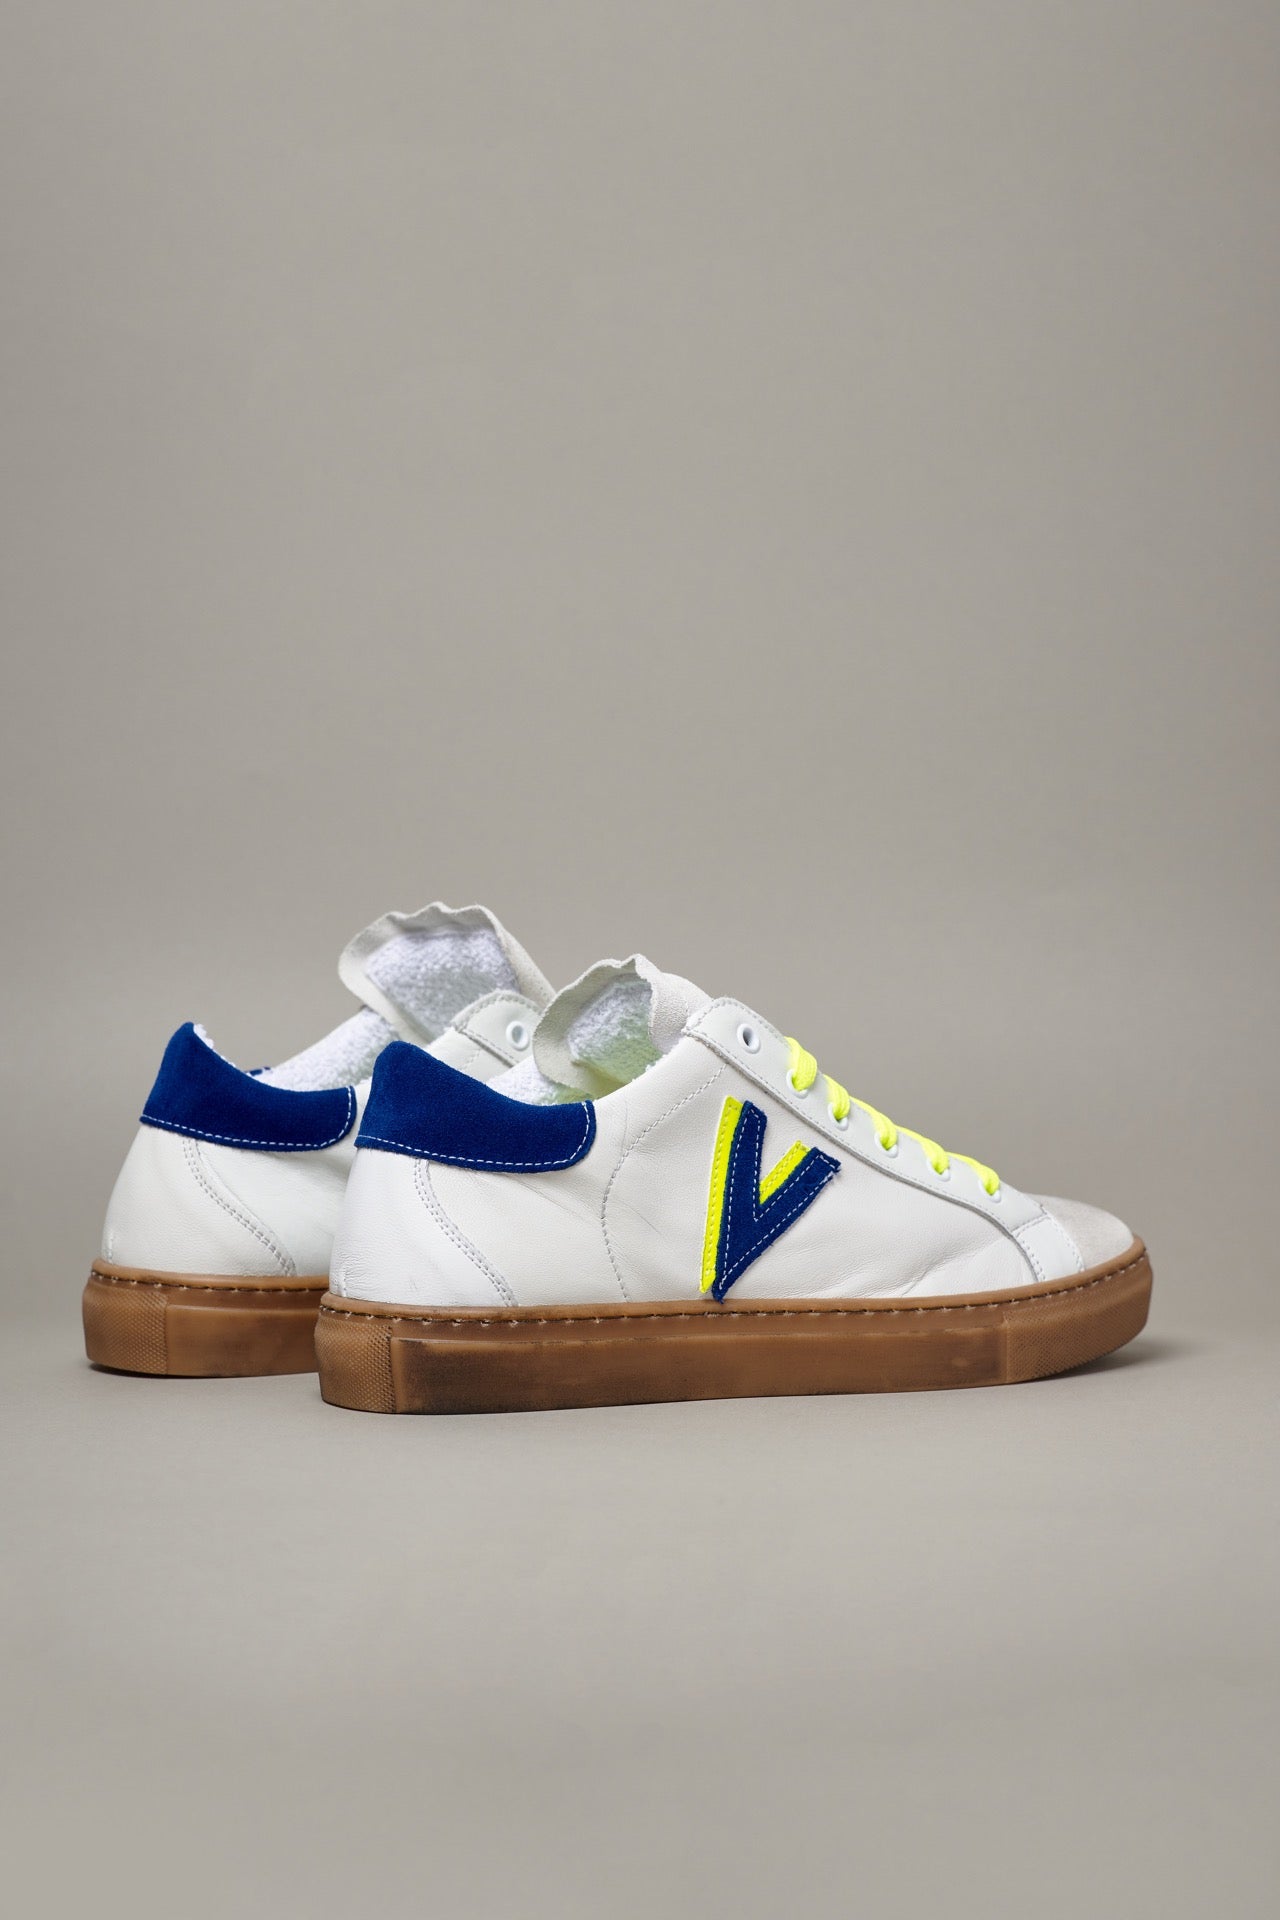 OLYMPIC V - Sneakers a suola bassa Bianca con retro e inserto bicolor Blu e Giallo Fluo